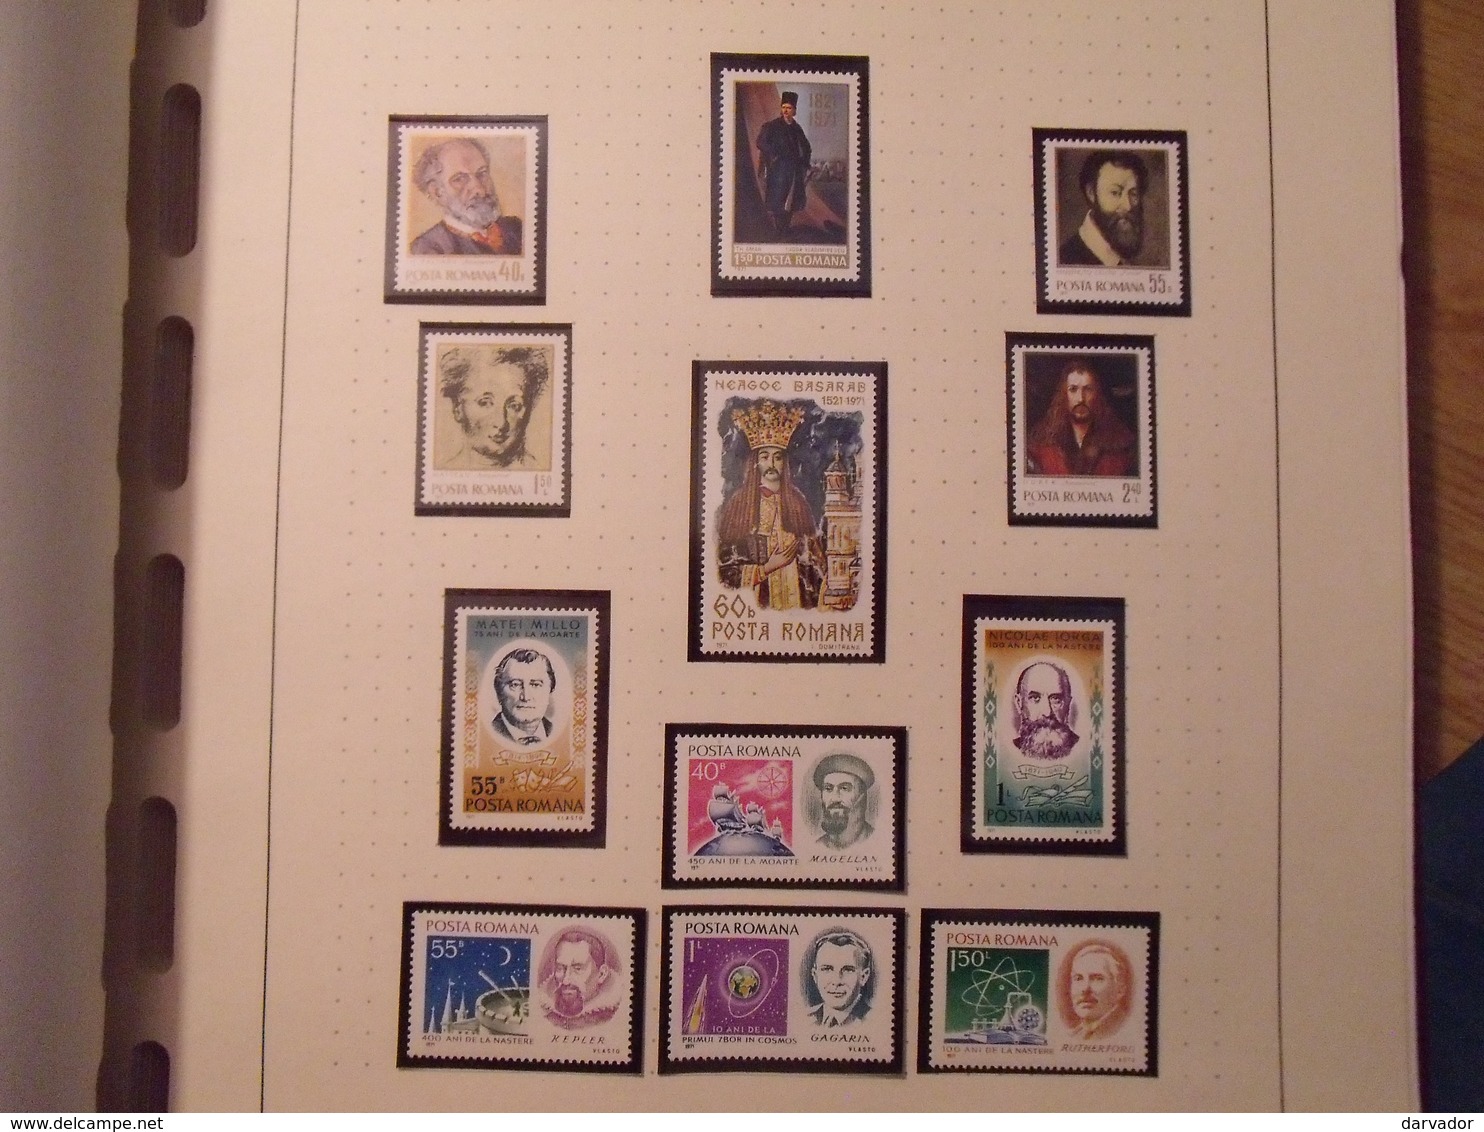 album FF  / Collection de timbres de ROUMANIE  tous neuf ** sans charnière MNH dont blocs  superbe